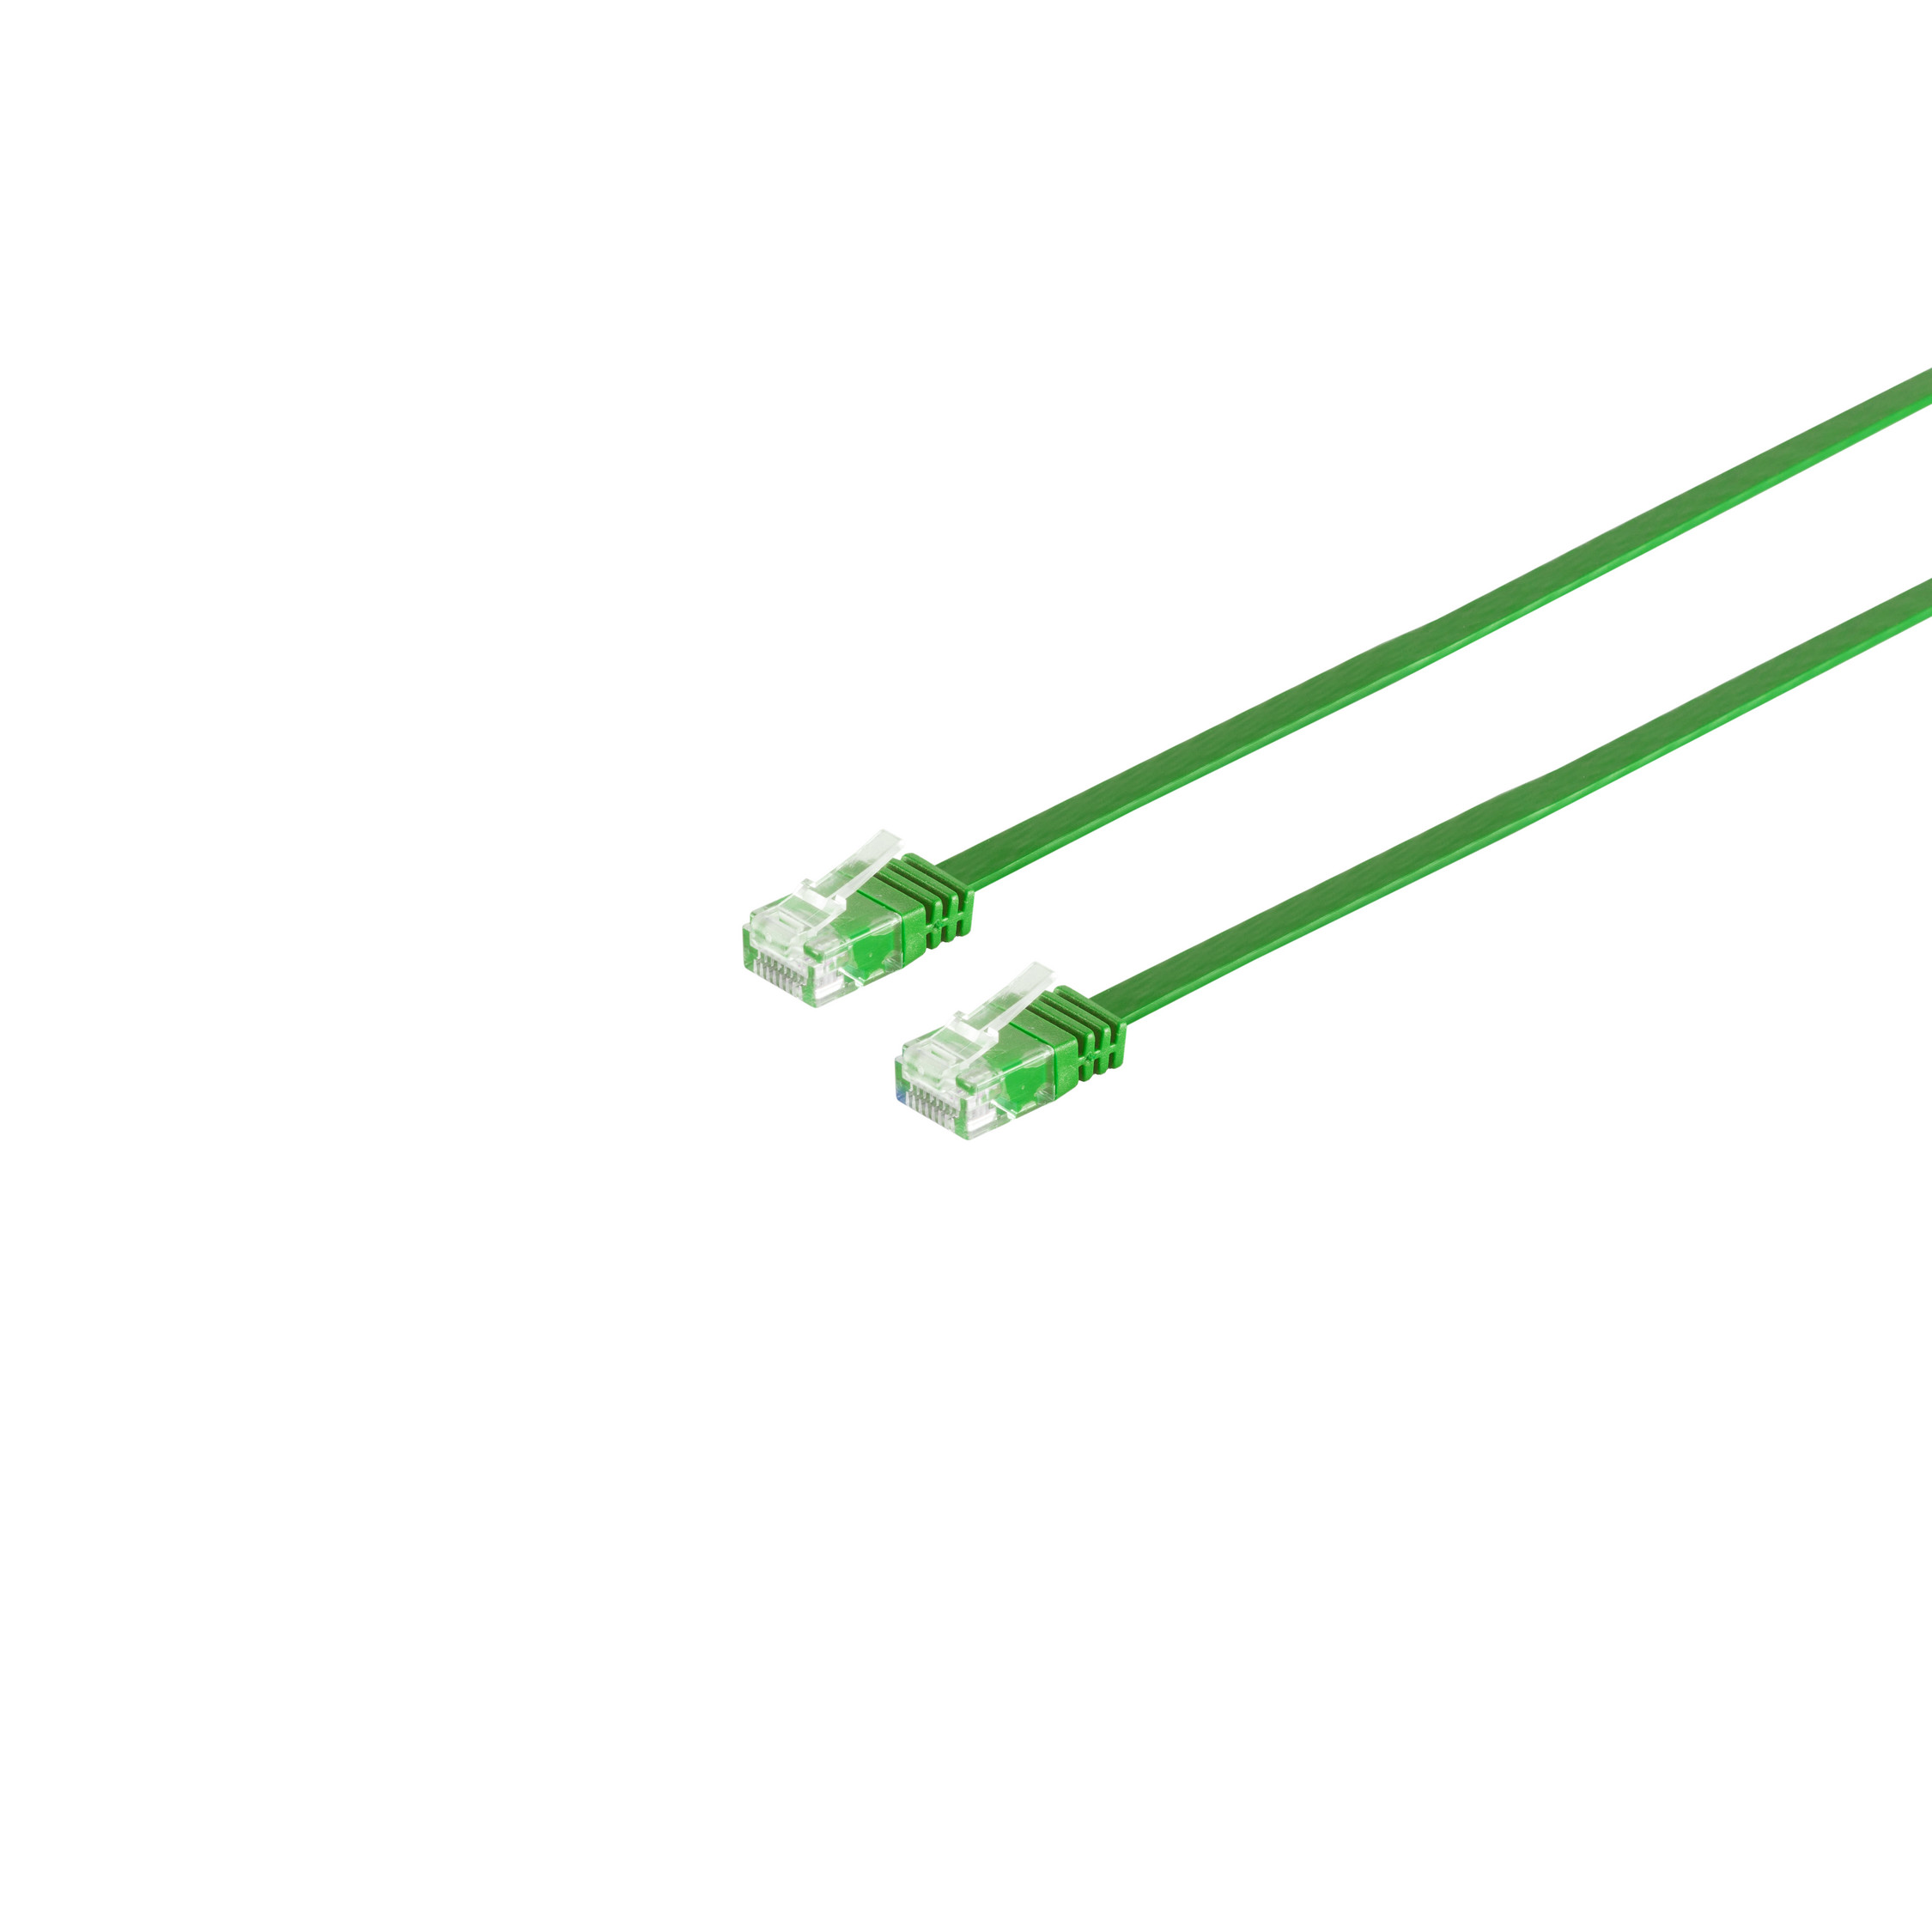 MAXIMUM grün slim m 0,25m, Patchkabel-Flachkabel RJ45, CONNECTIVITY S/CONN Patchkabel 6 0,25 U/UTP cat.